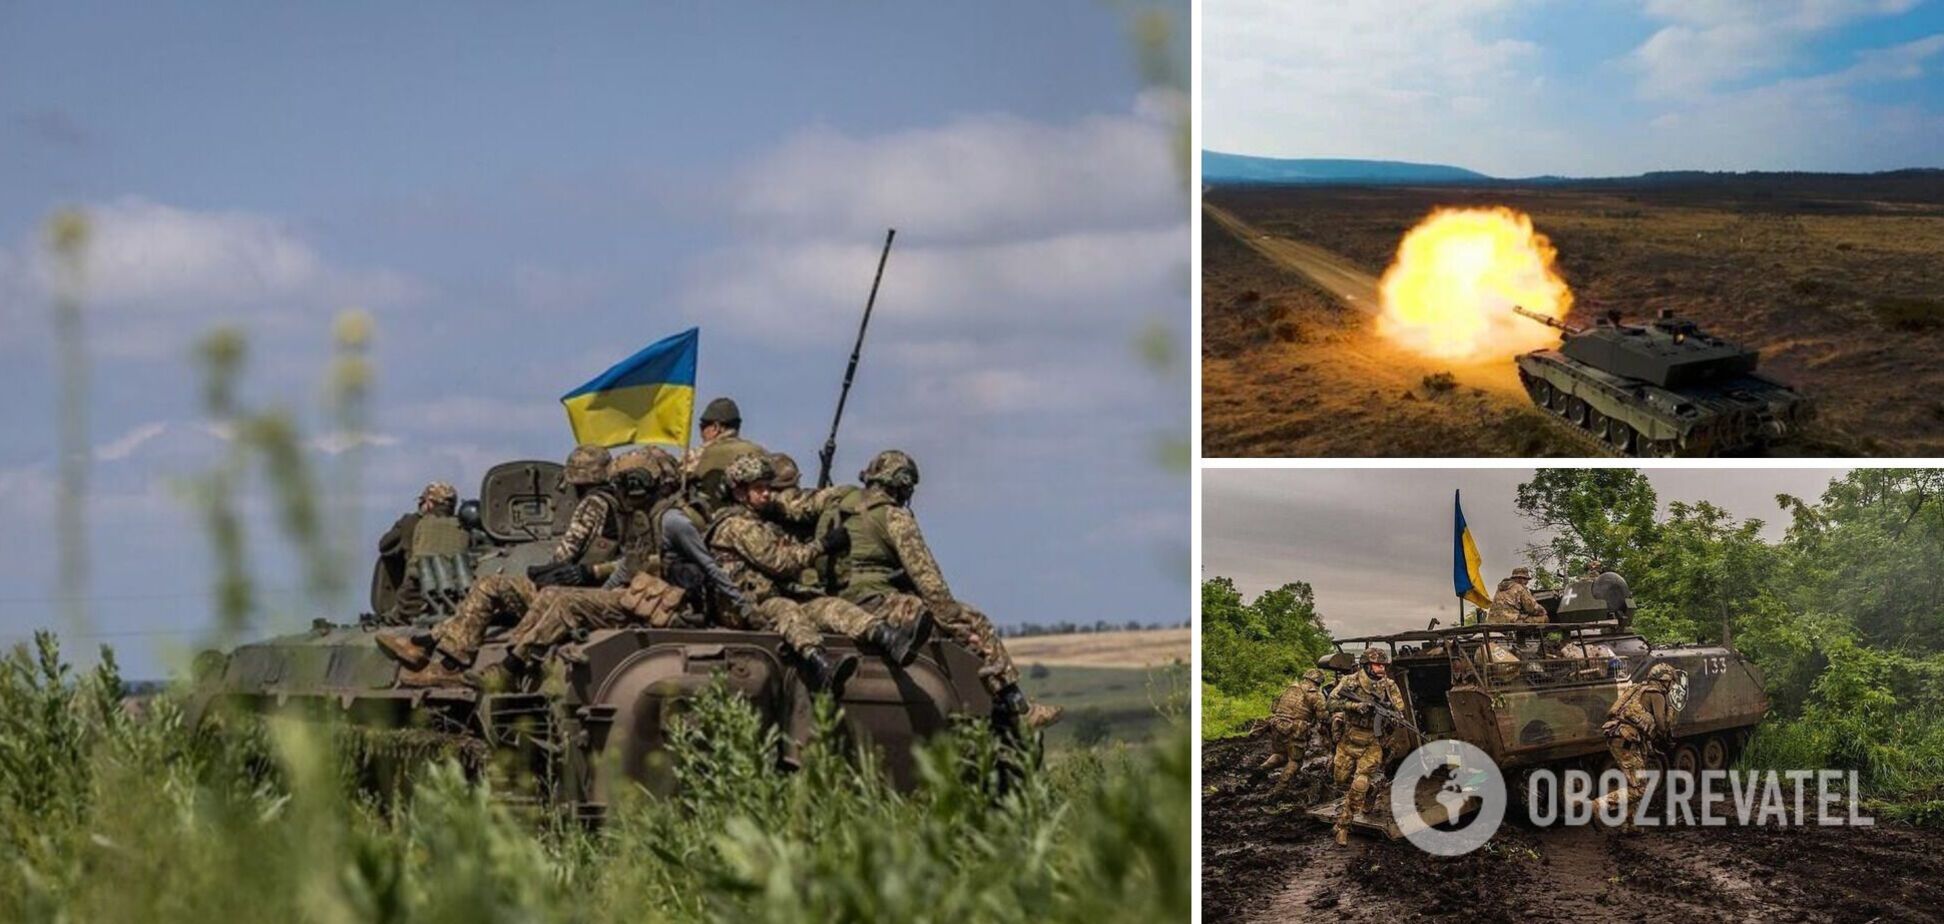 Освобождение юга Украины: командование РФ в панике затыкает дыры в обороне массовой гибелью своих солдат, а украинские воины идут на рекордн